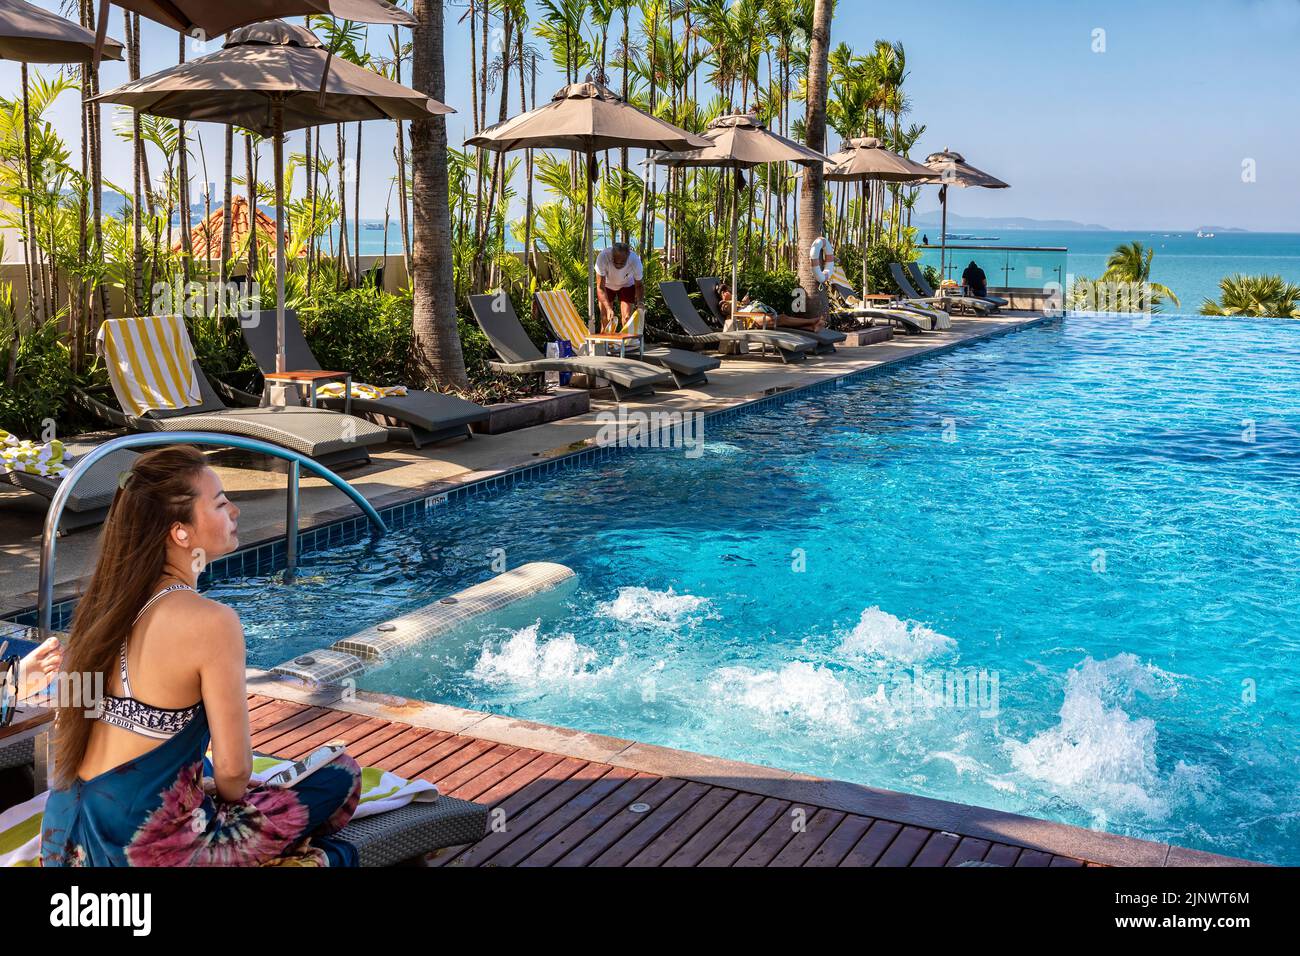 Swimming pool at beachfront hotel, Pattaya, Chon Buri, Thailand Stock Photo